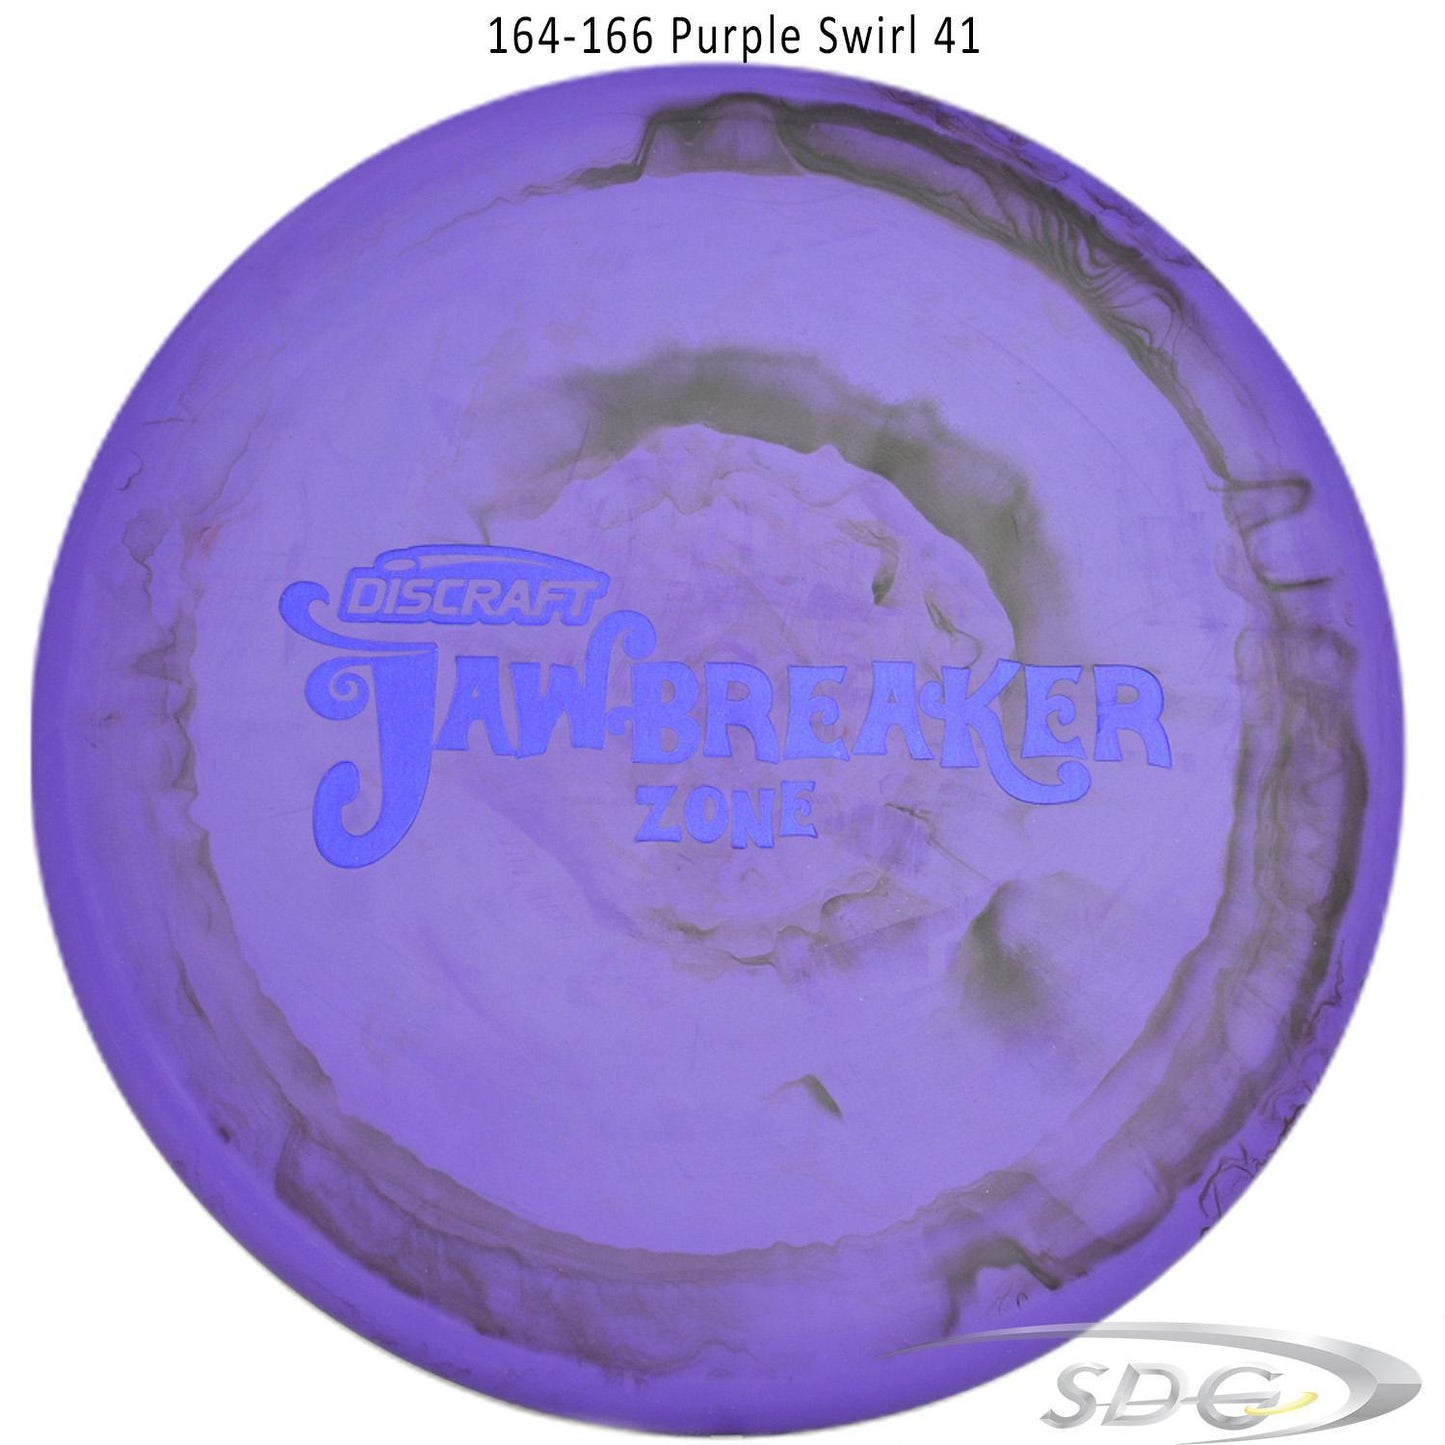 discraft-jawbreaker-zone-disc-golf-putter 164-166 Purple Swirl 41